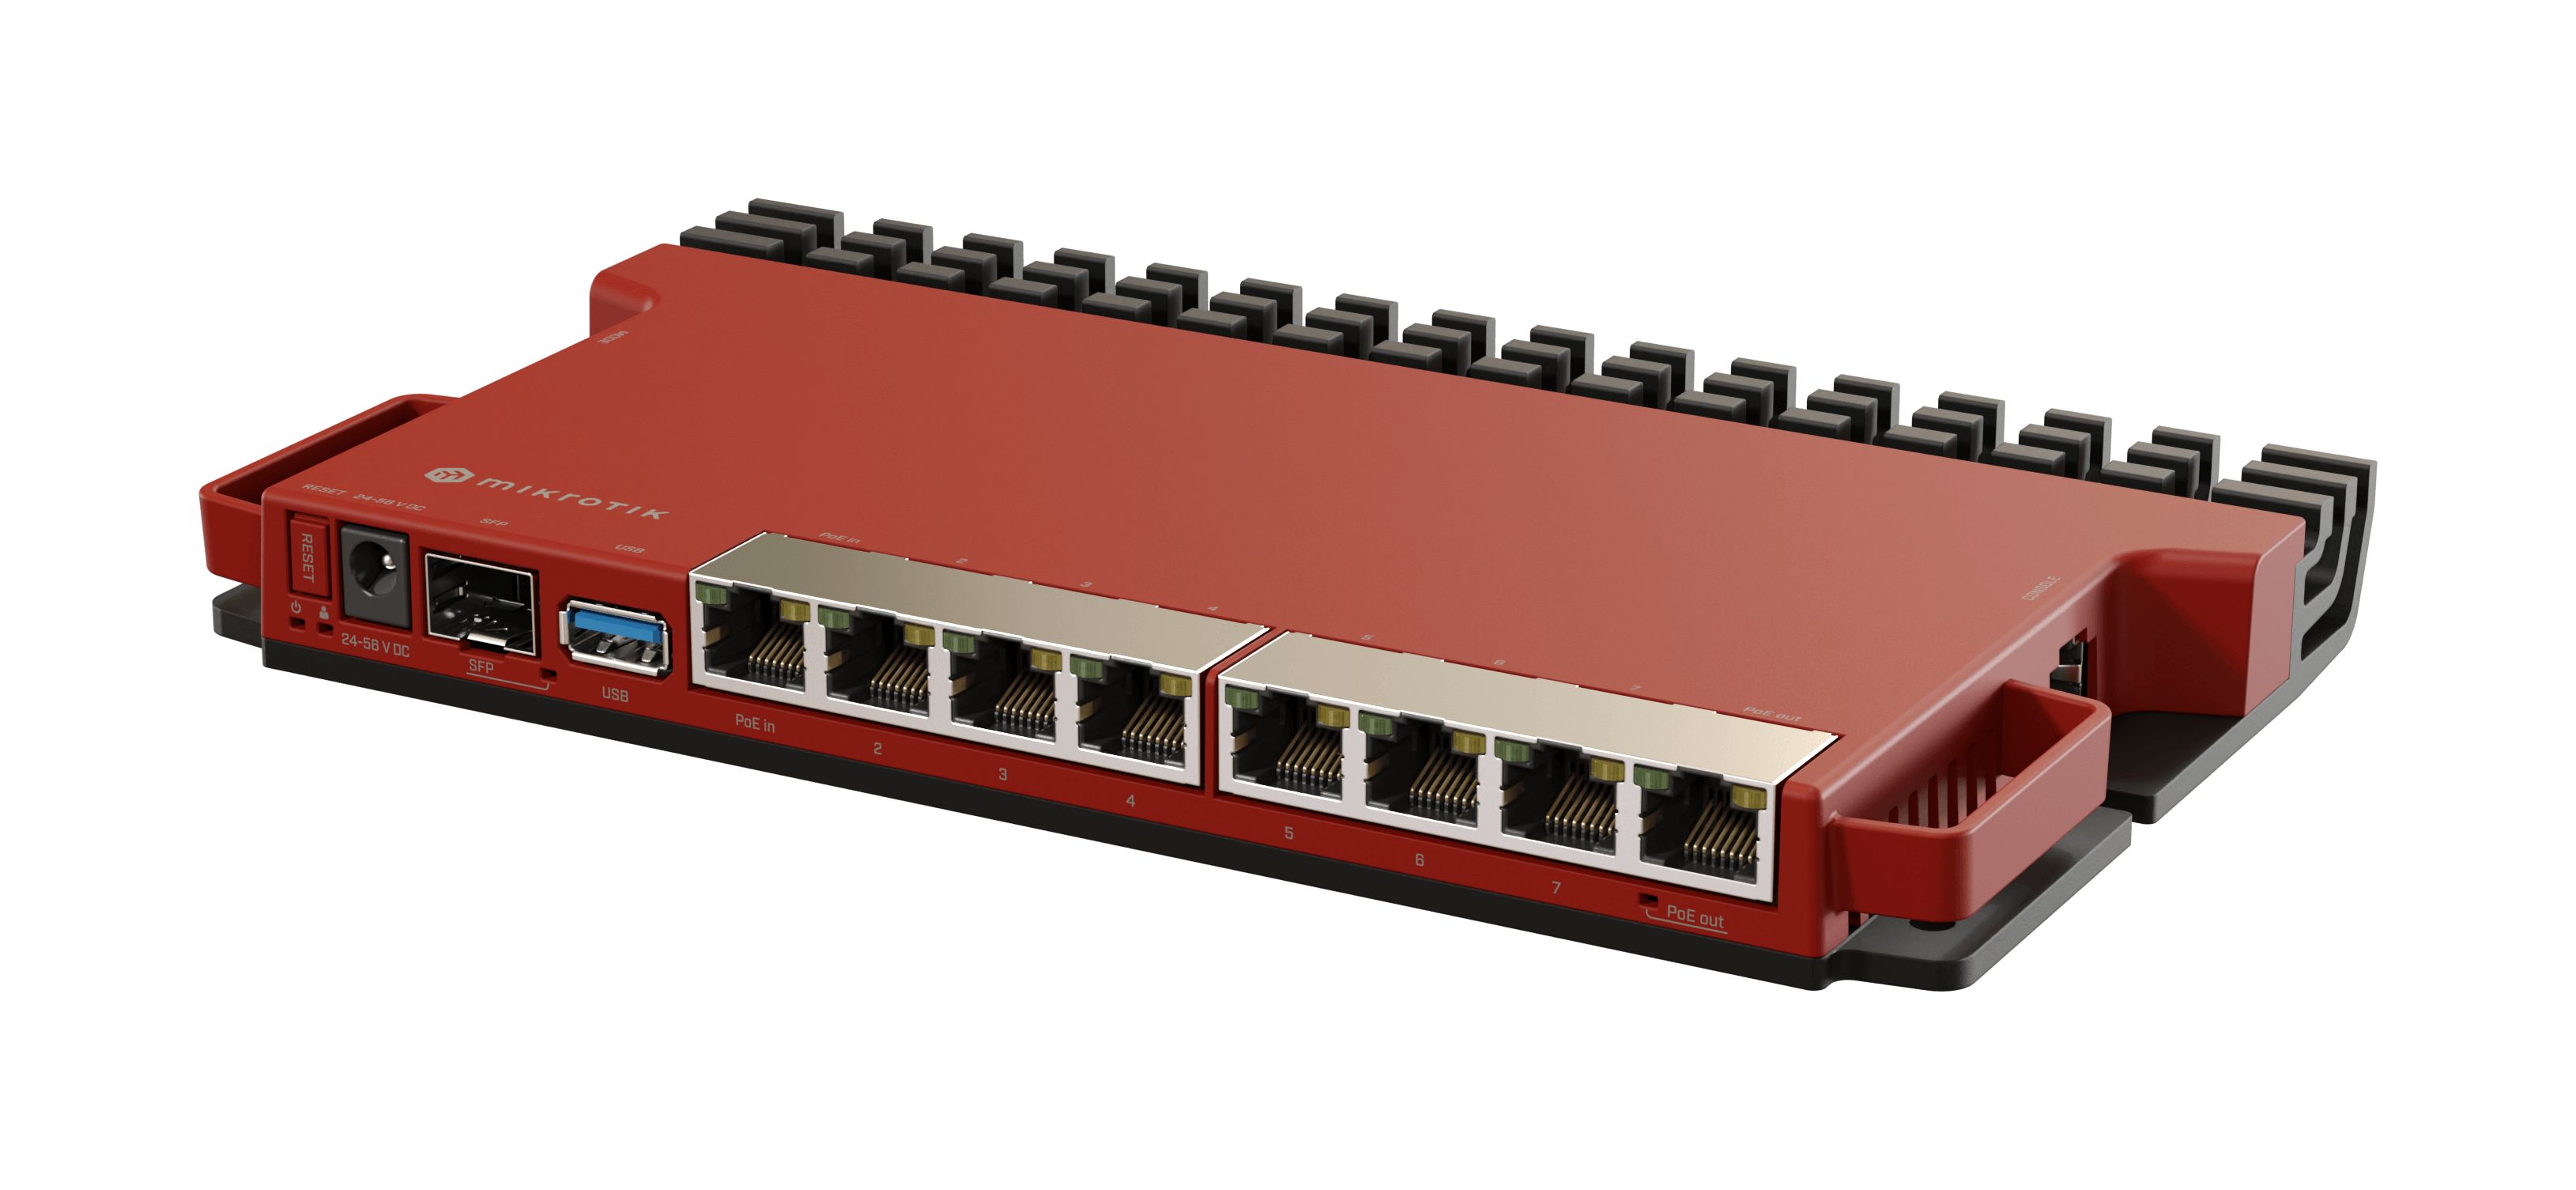   Routeurs  pro   Routeur 8x Giga 1 SFP+ 2,5Gbits RBL009 L009UIGS-RM